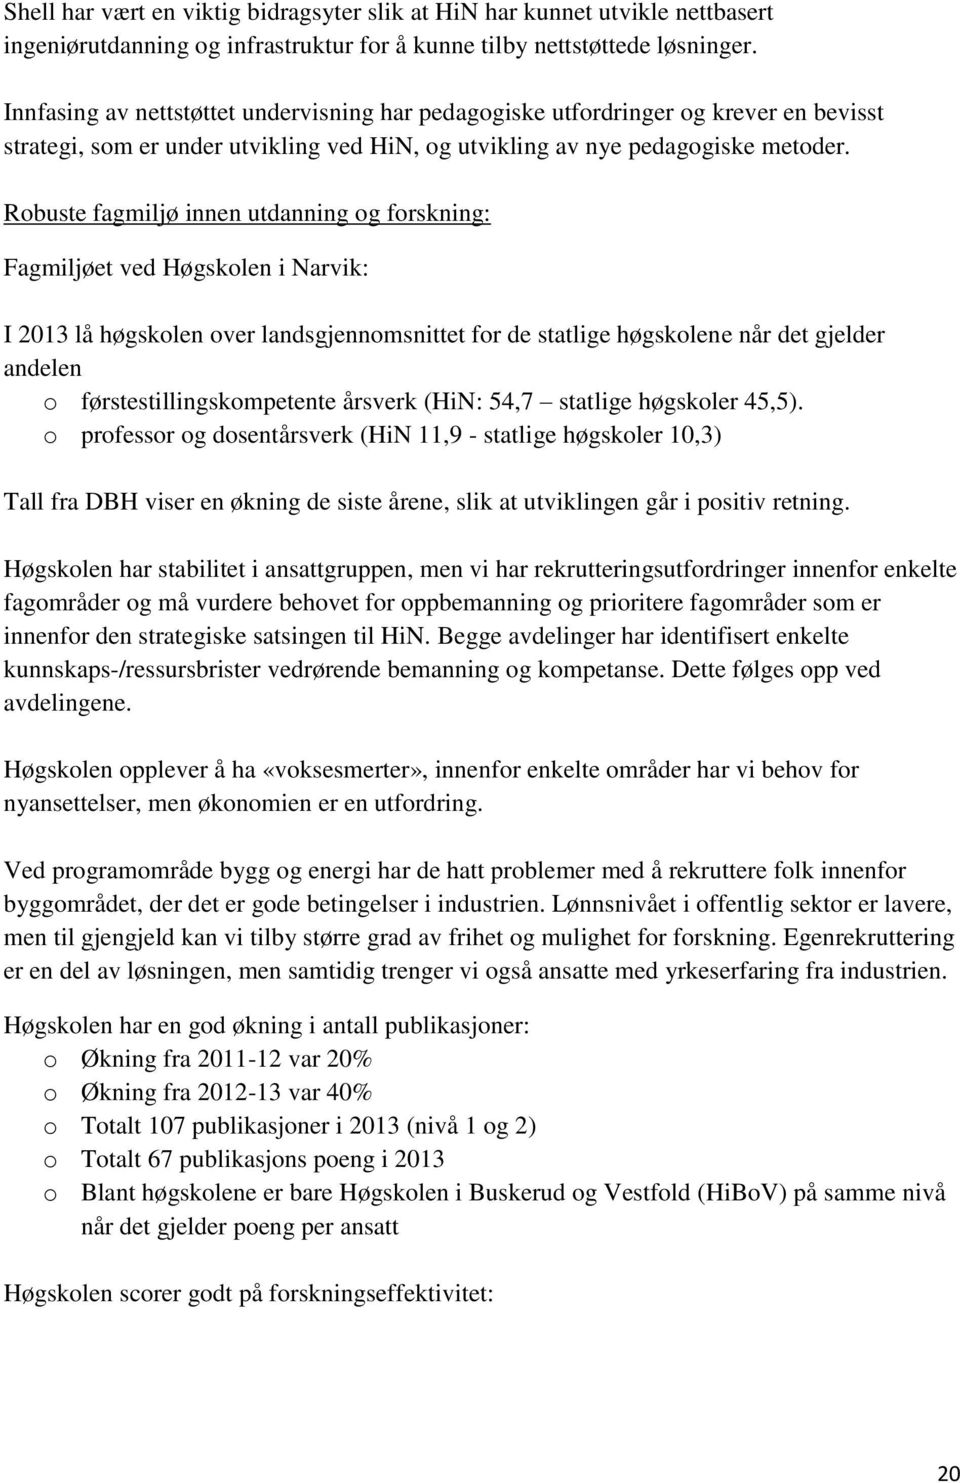 Robuste fagmiljø innen utdanning og forskning: Fagmiljøet ved Høgskolen i Narvik: I 2013 lå høgskolen over landsgjennomsnittet for de statlige høgskolene når det gjelder andelen o